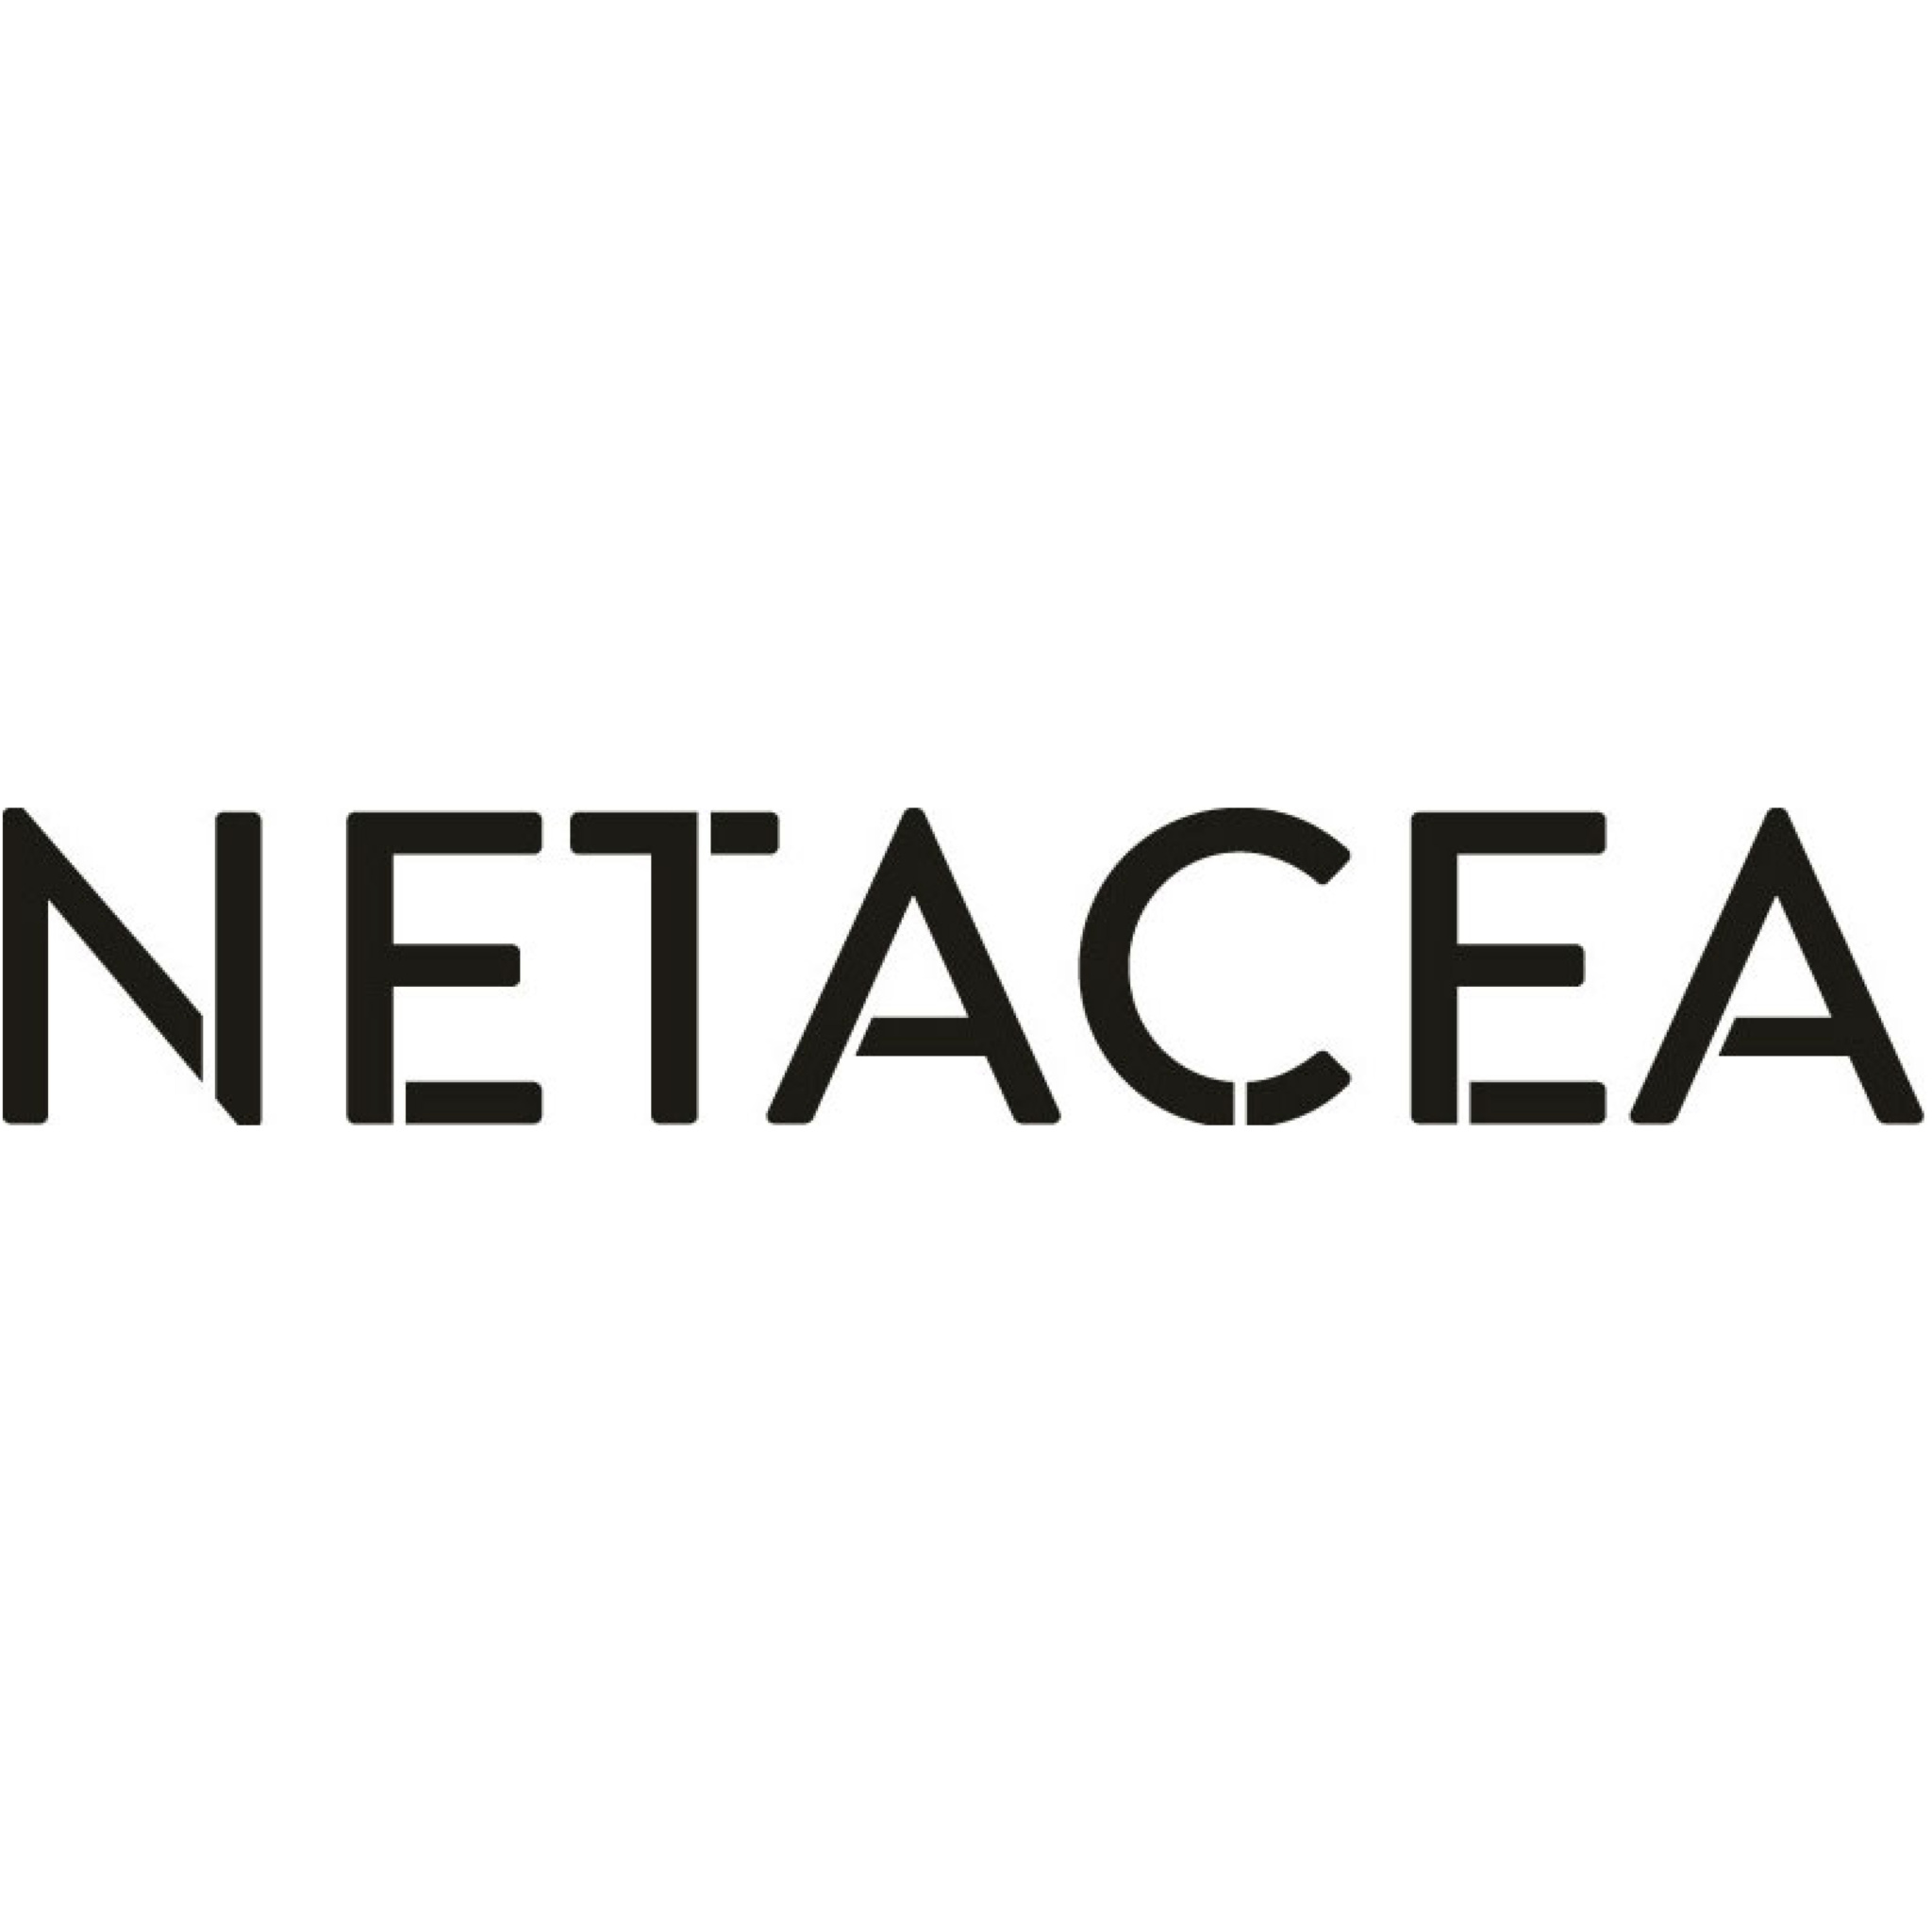 Netacea